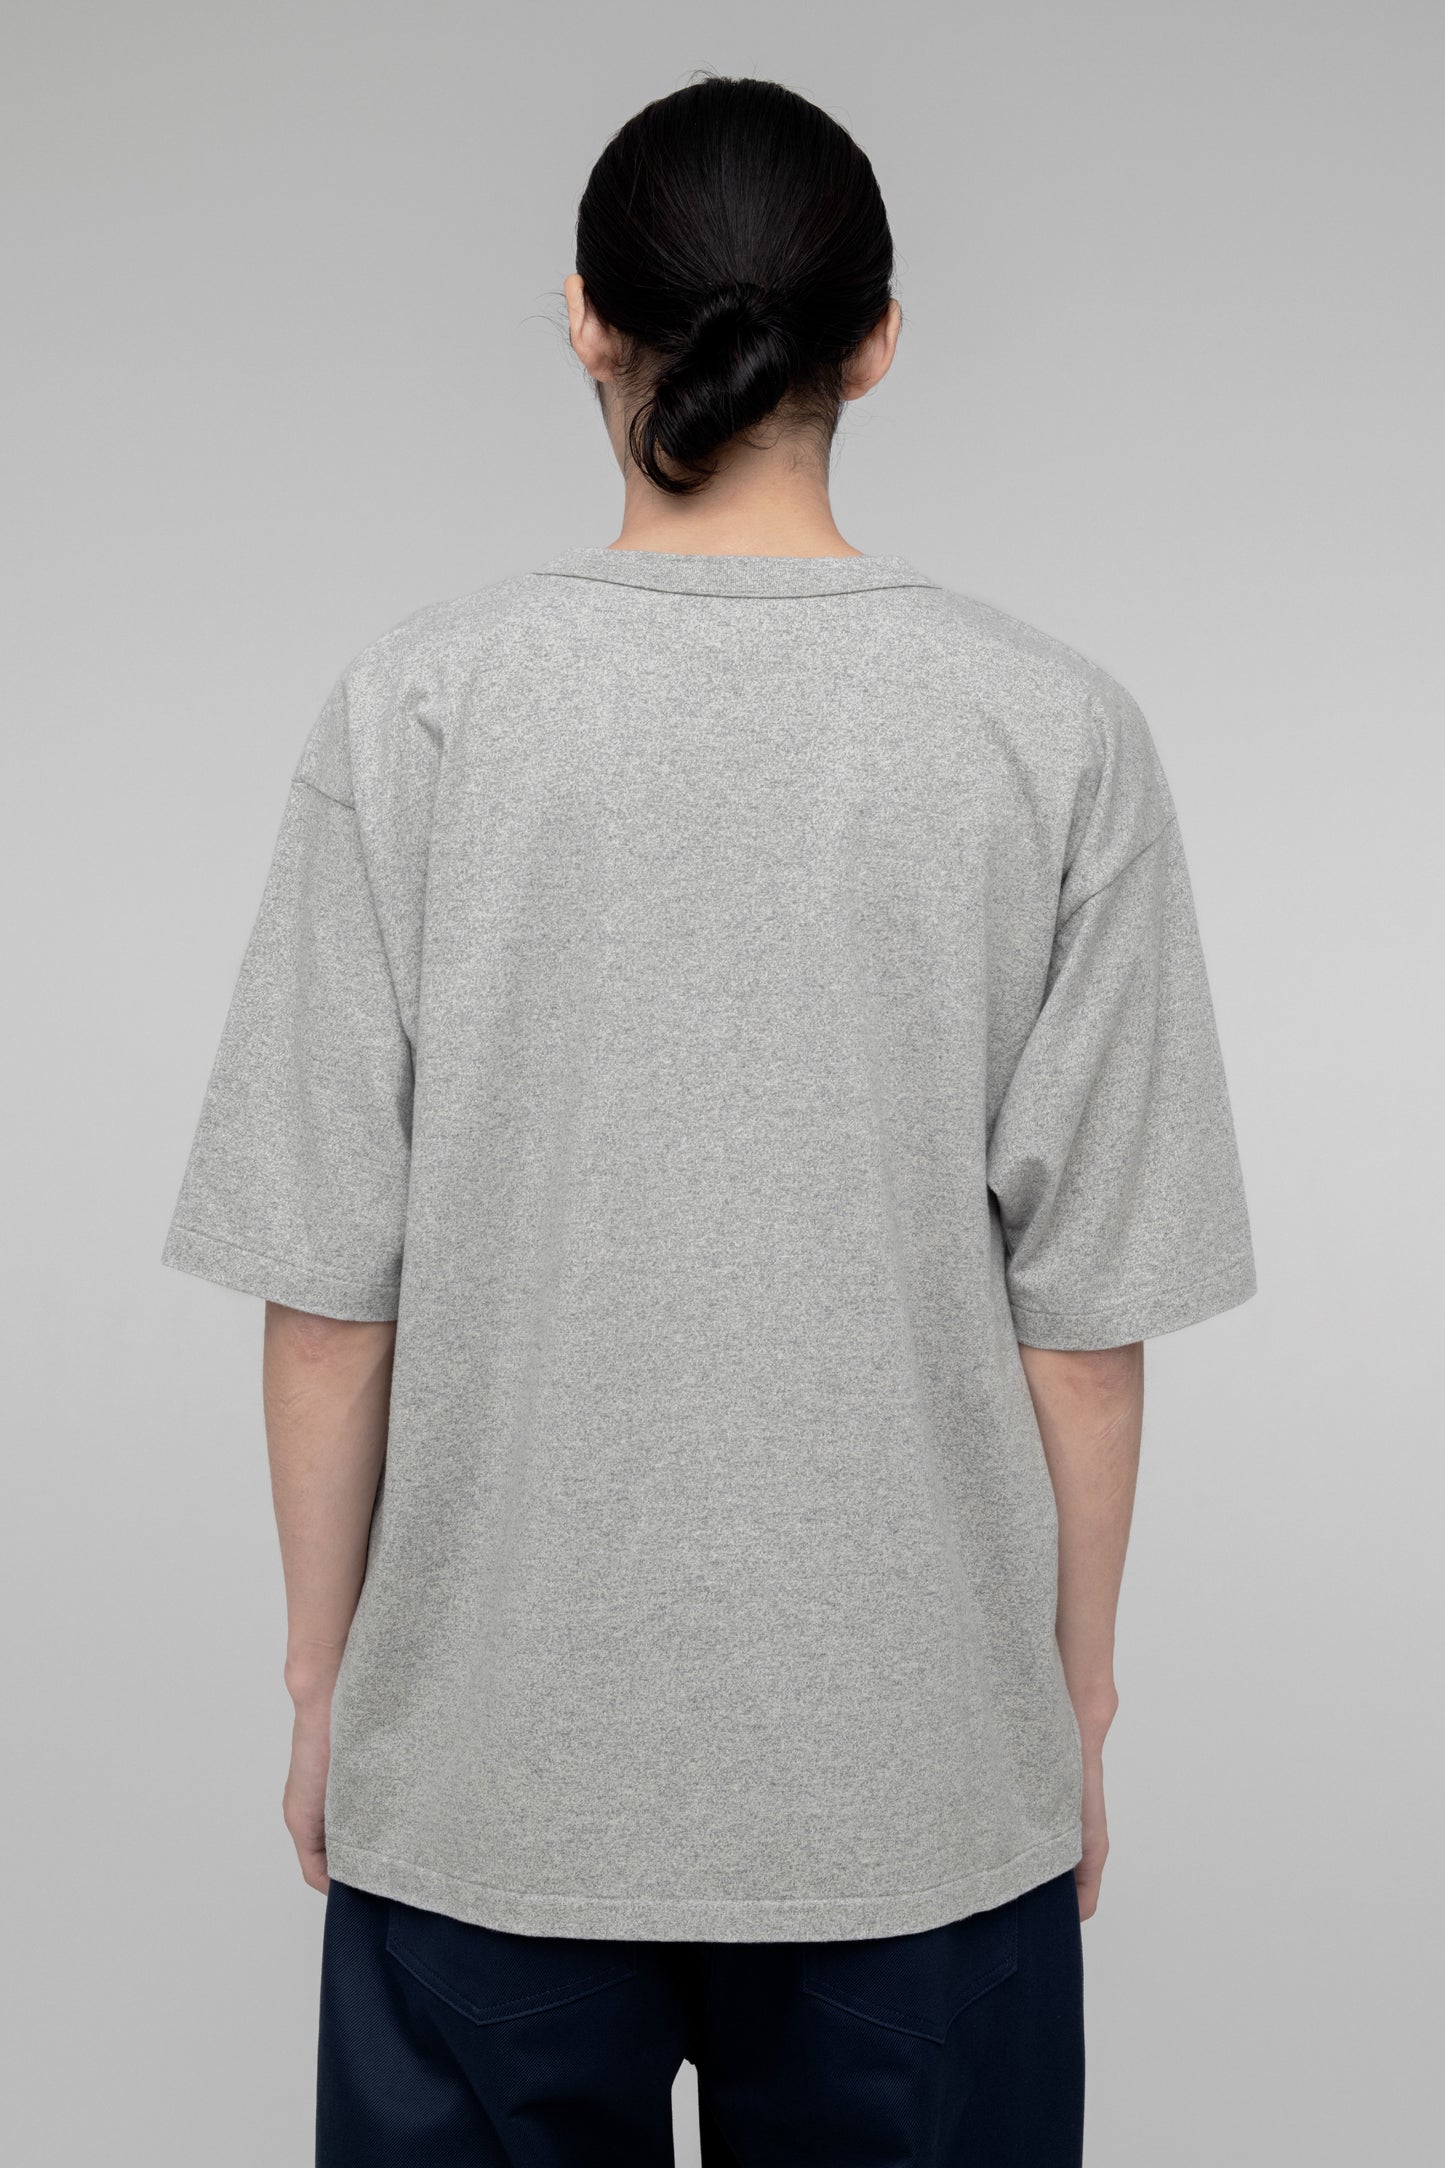 Melange T-shirt (Missouri)